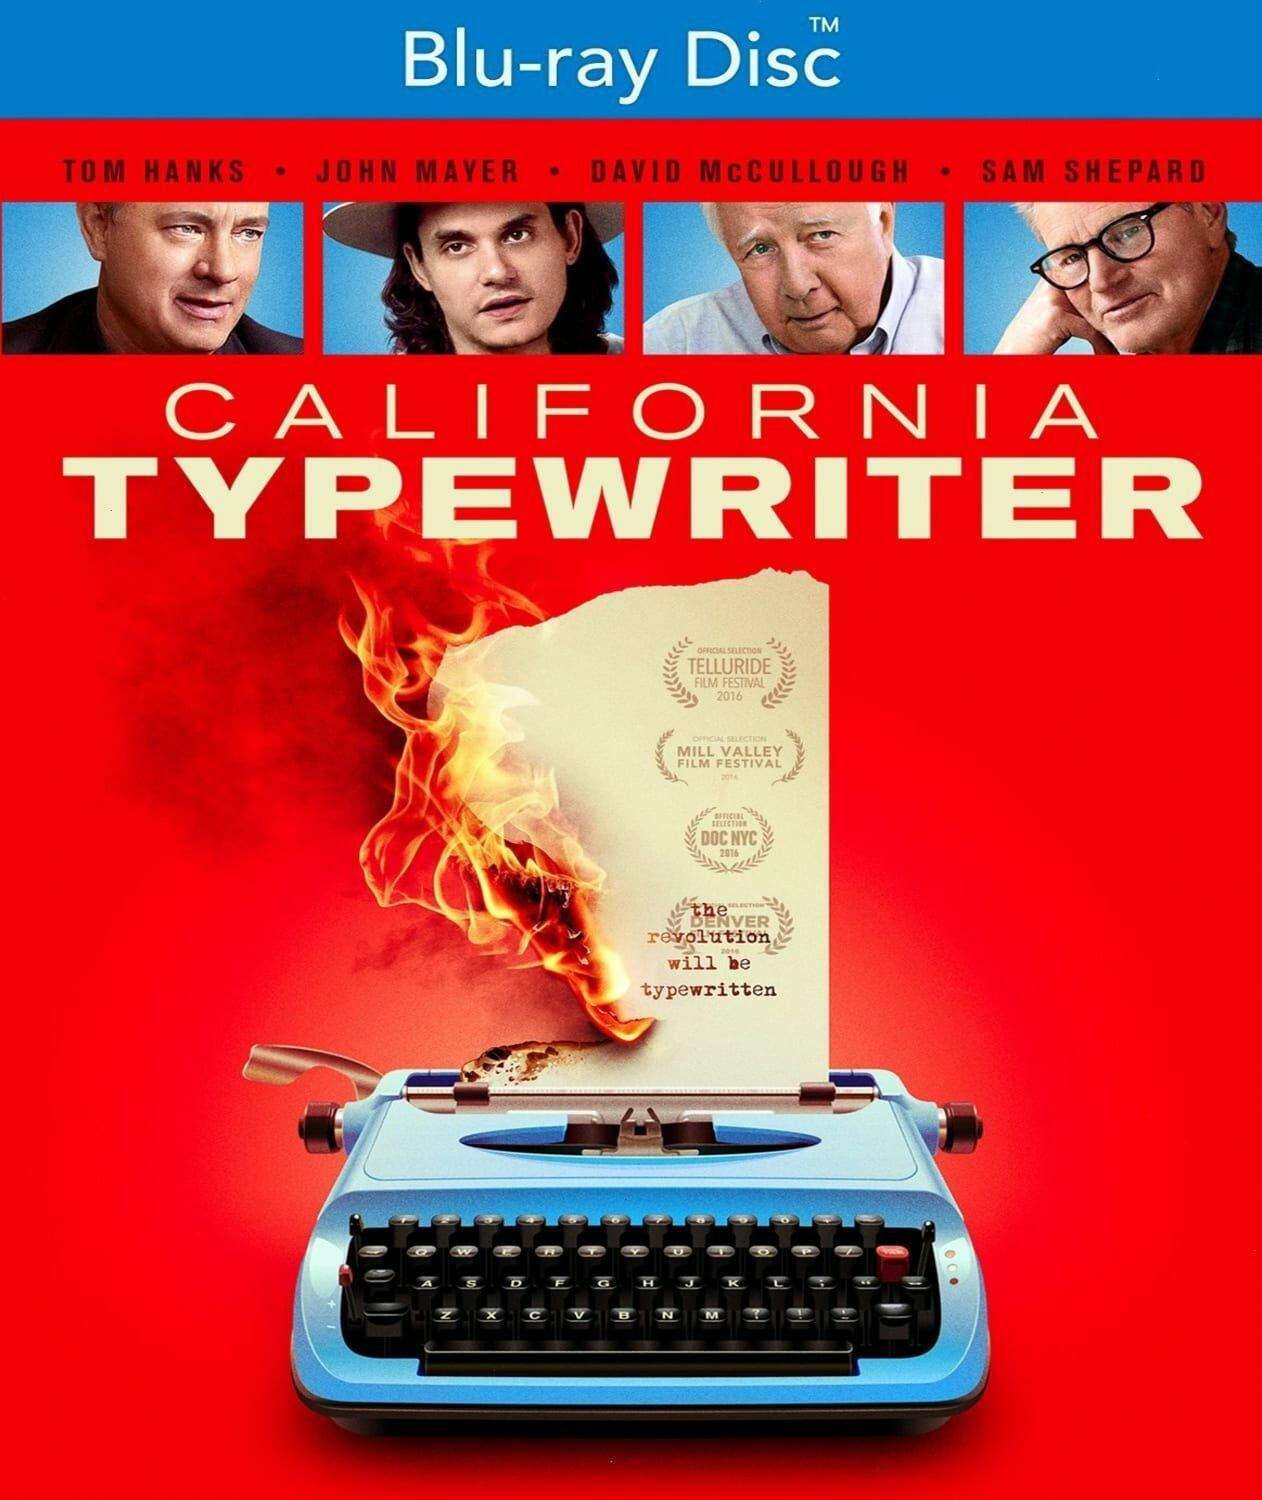 California Typewriter (Blu-ray) on MovieShack